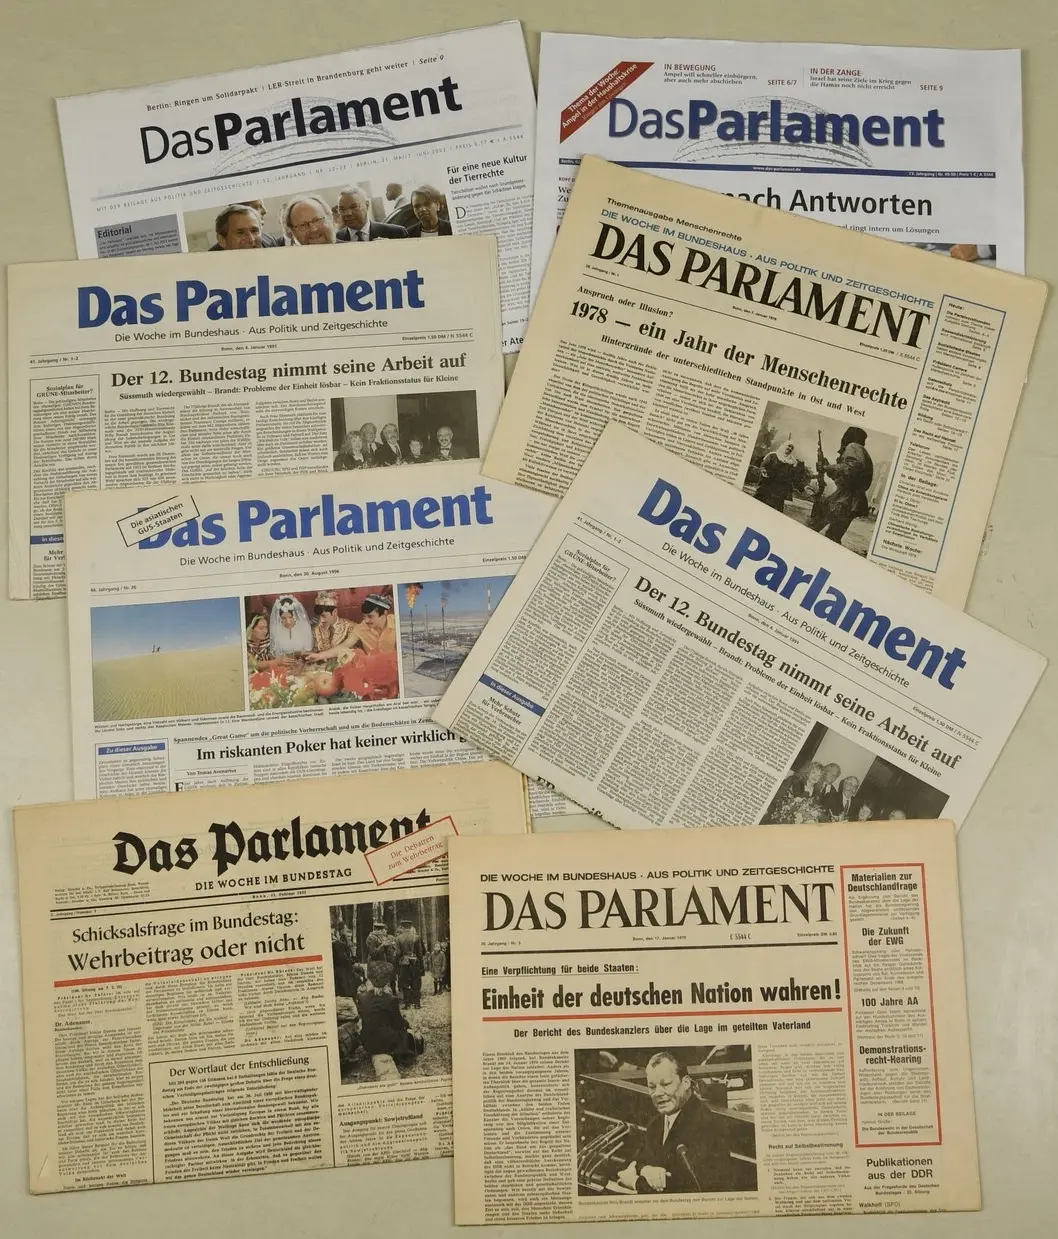 Collage aus den Titelseiten "Das Parlament" über mehrere Jahrzehnte